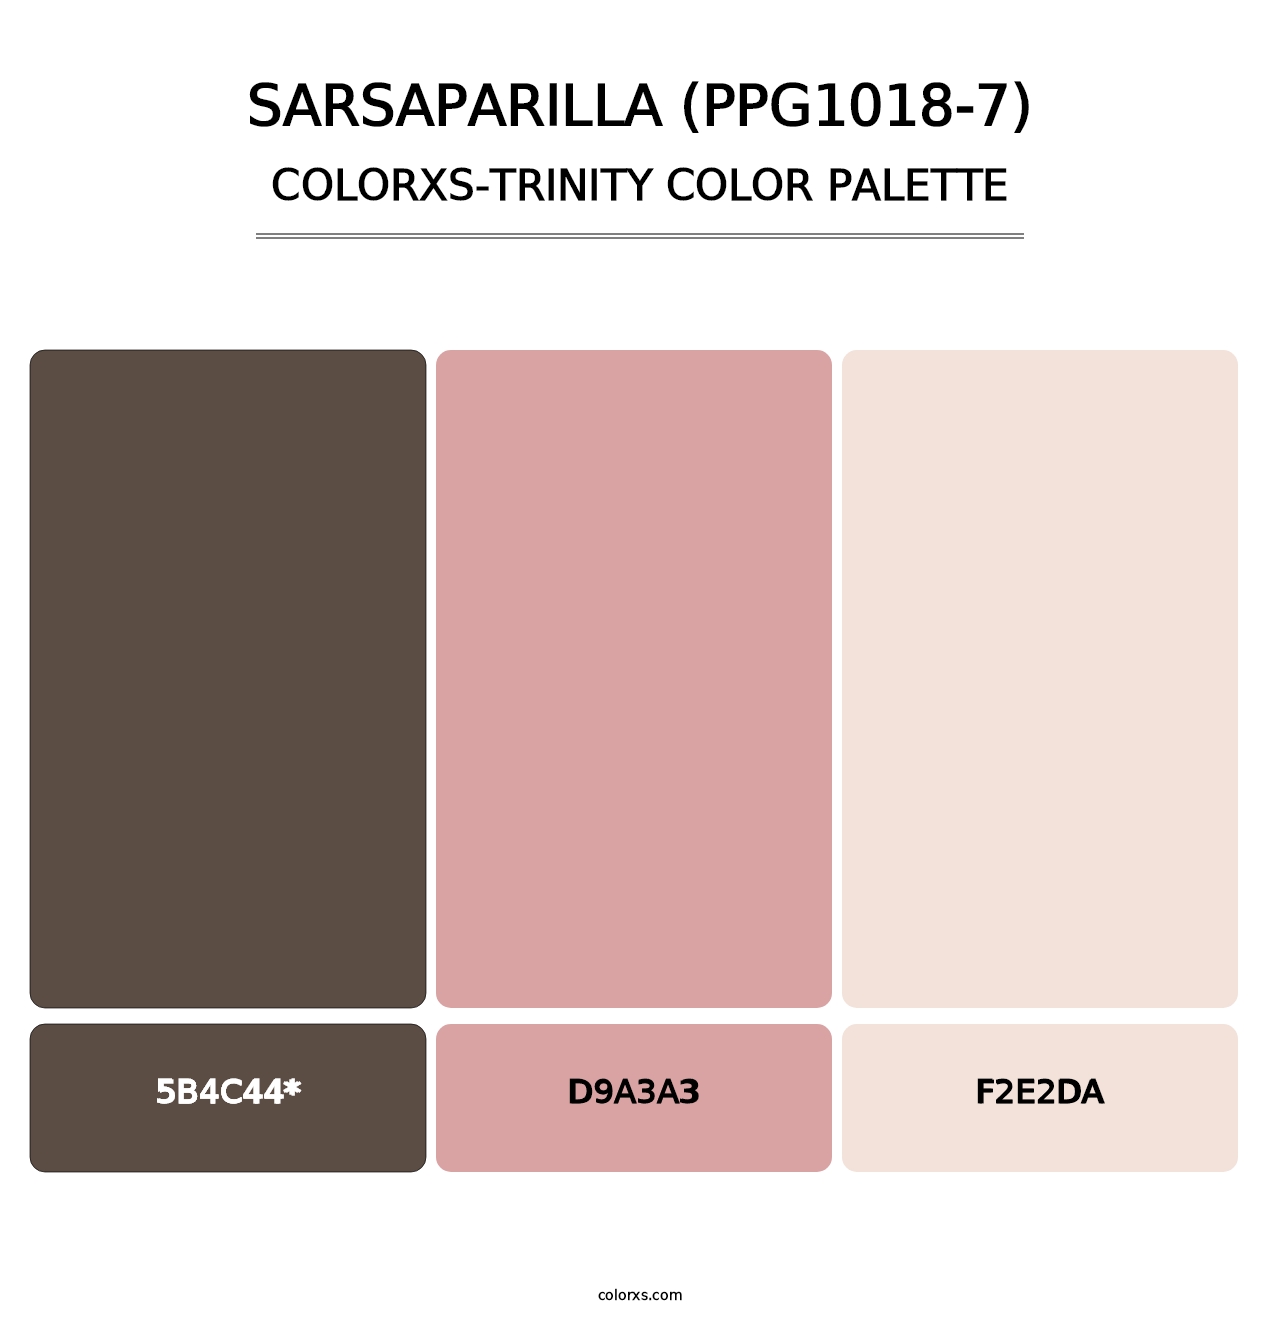 Sarsaparilla (PPG1018-7) - Colorxs Trinity Palette